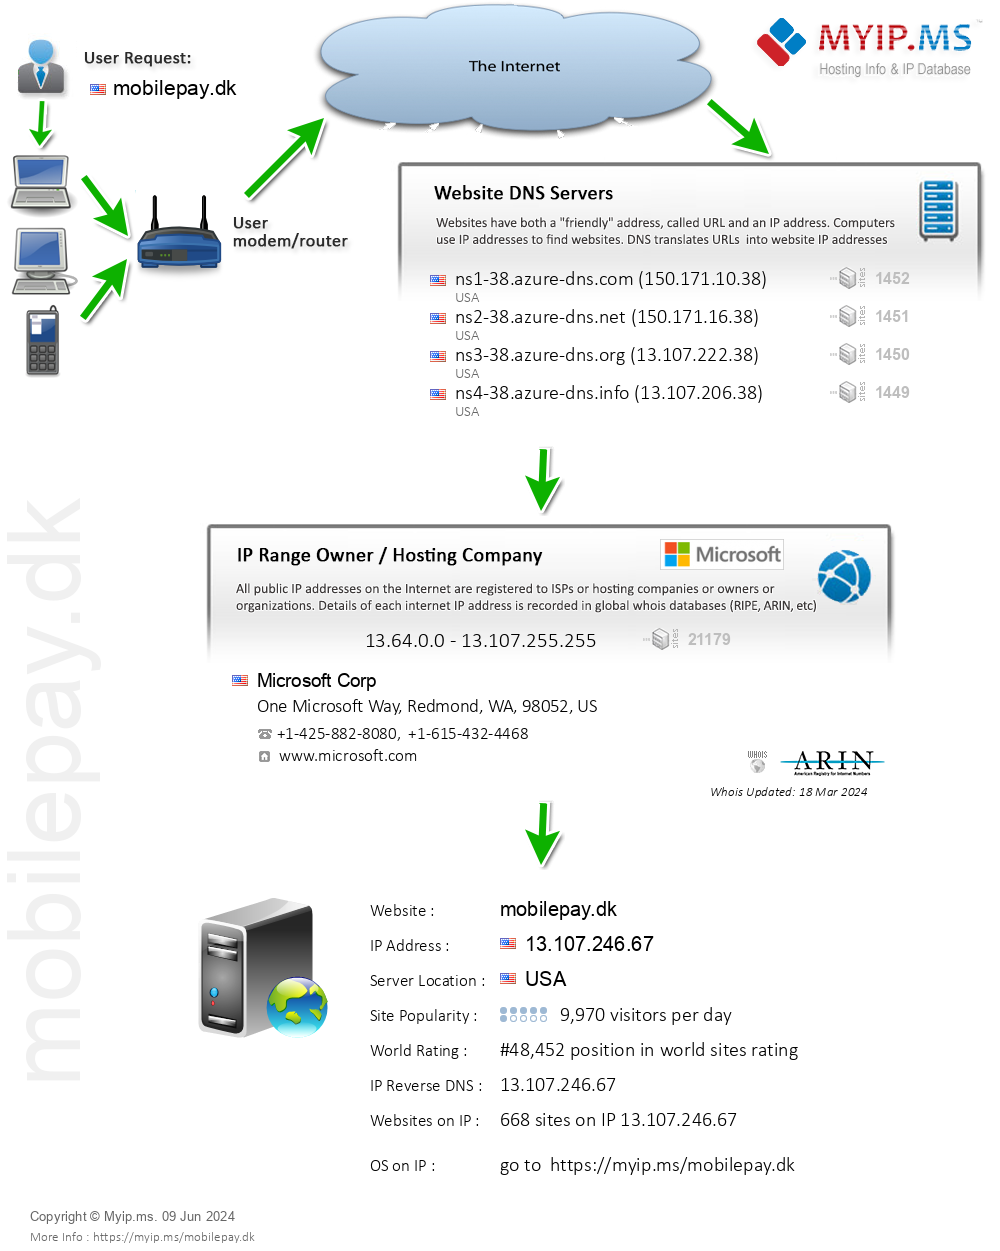 Mobilepay.dk - Website Hosting Visual IP Diagram